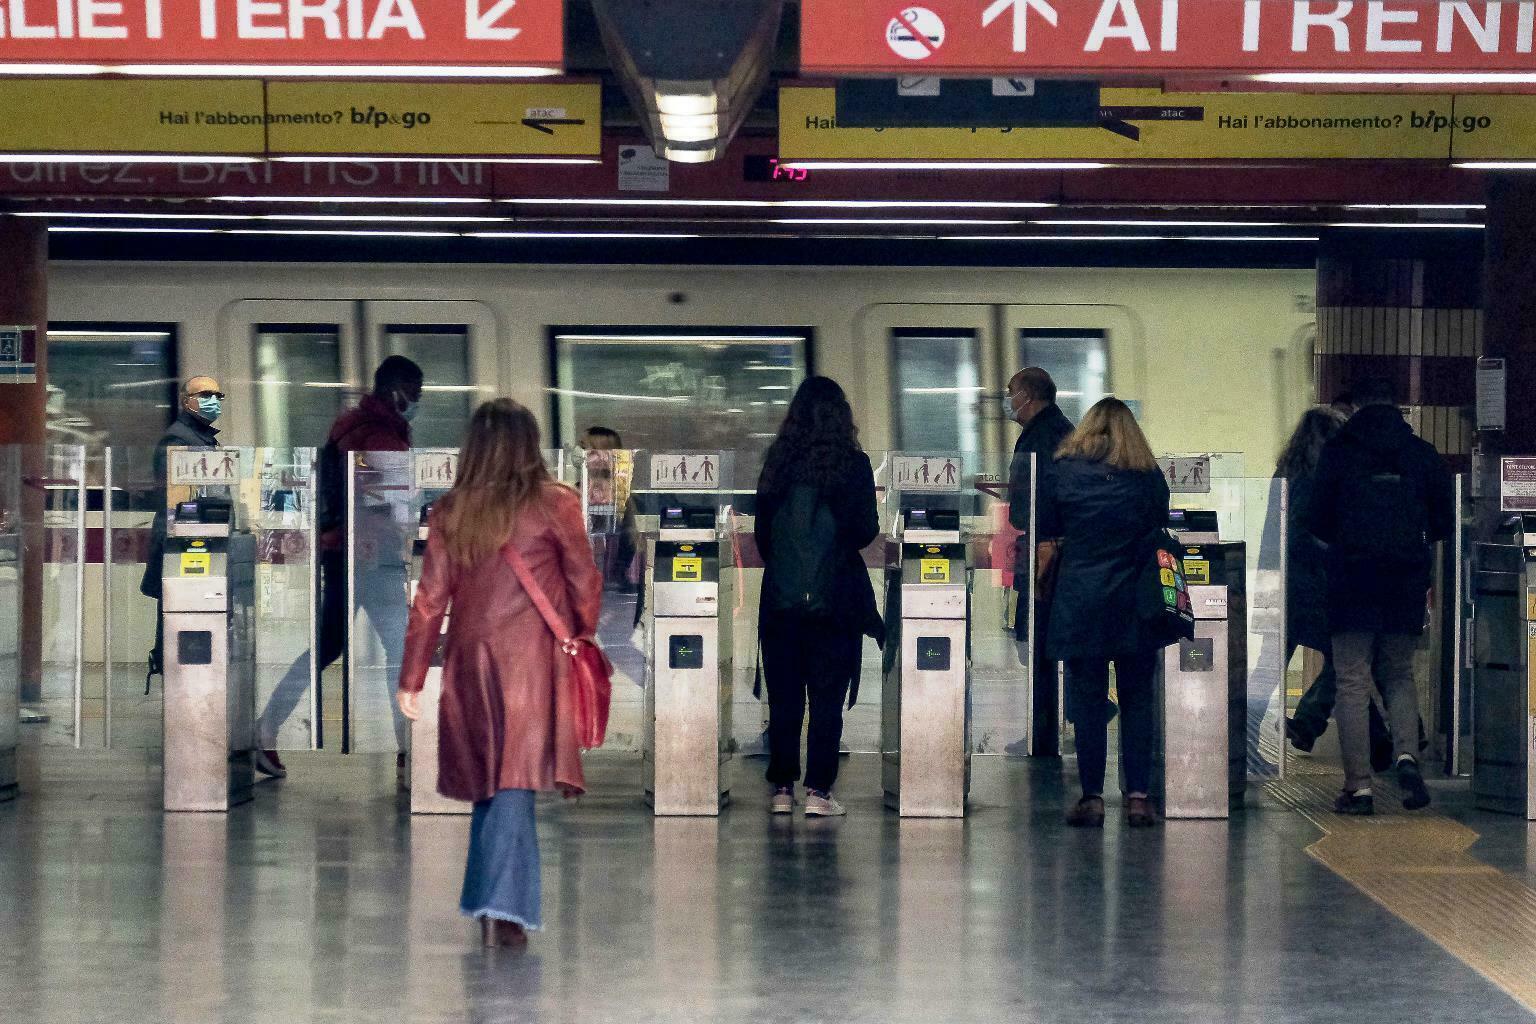 Linaspettato Annuncio Alla Metro Di Roma Attenti Agli Zingari